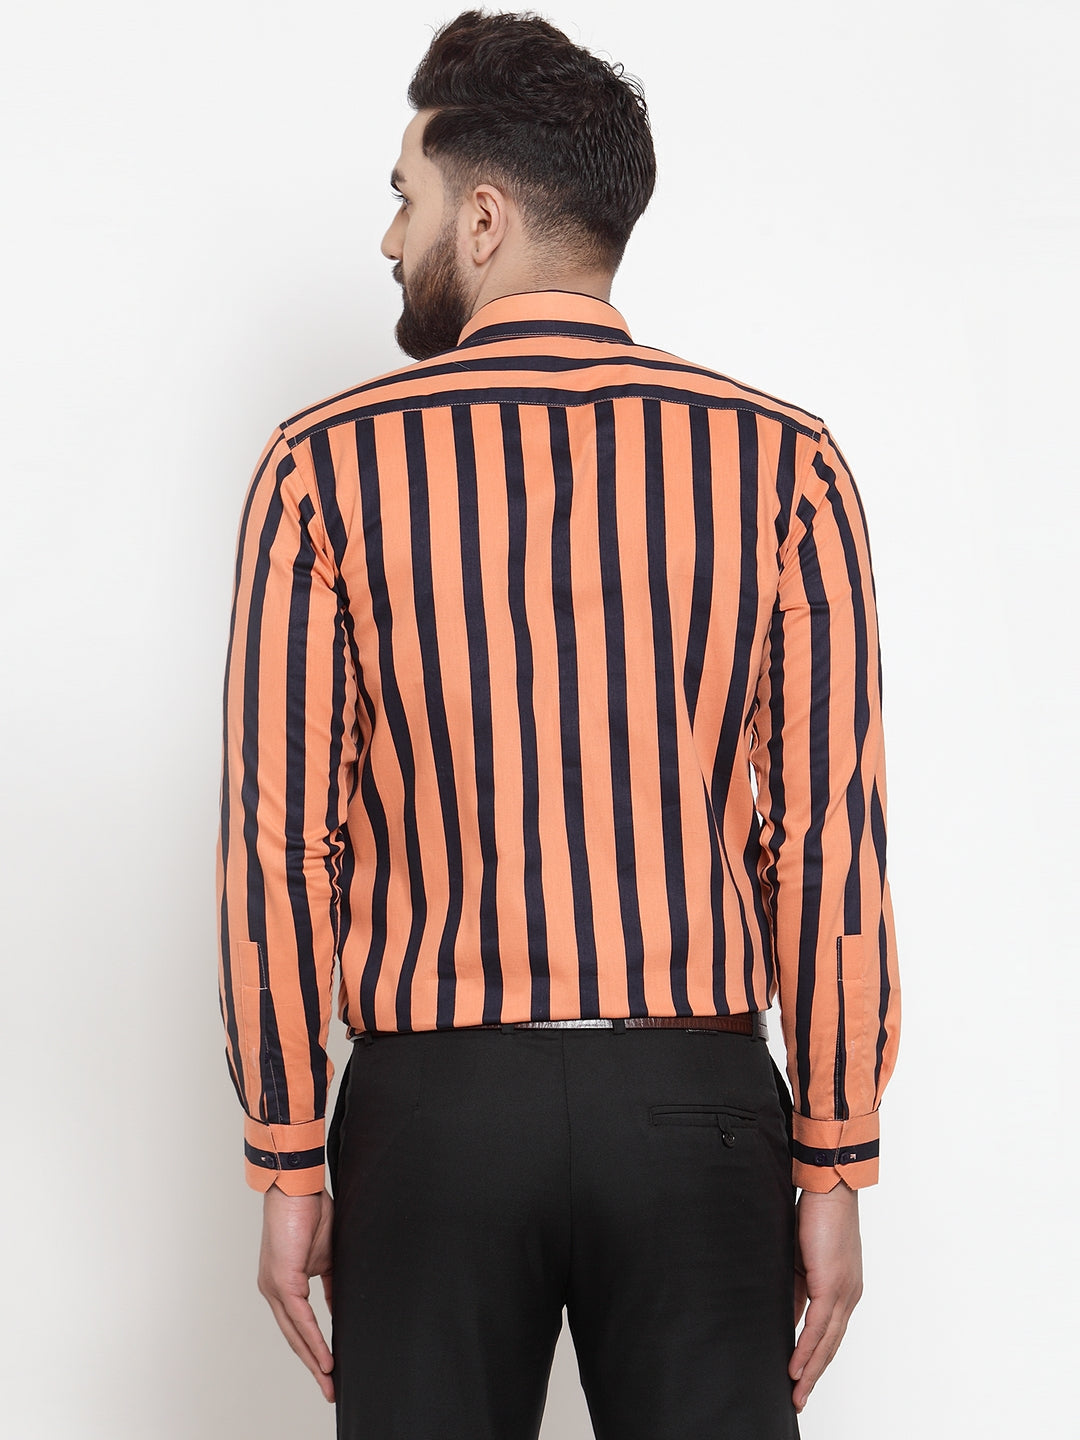 Men's Orange Cotton Striped Formal Shirts ( SF 744Orange ) - Jainish